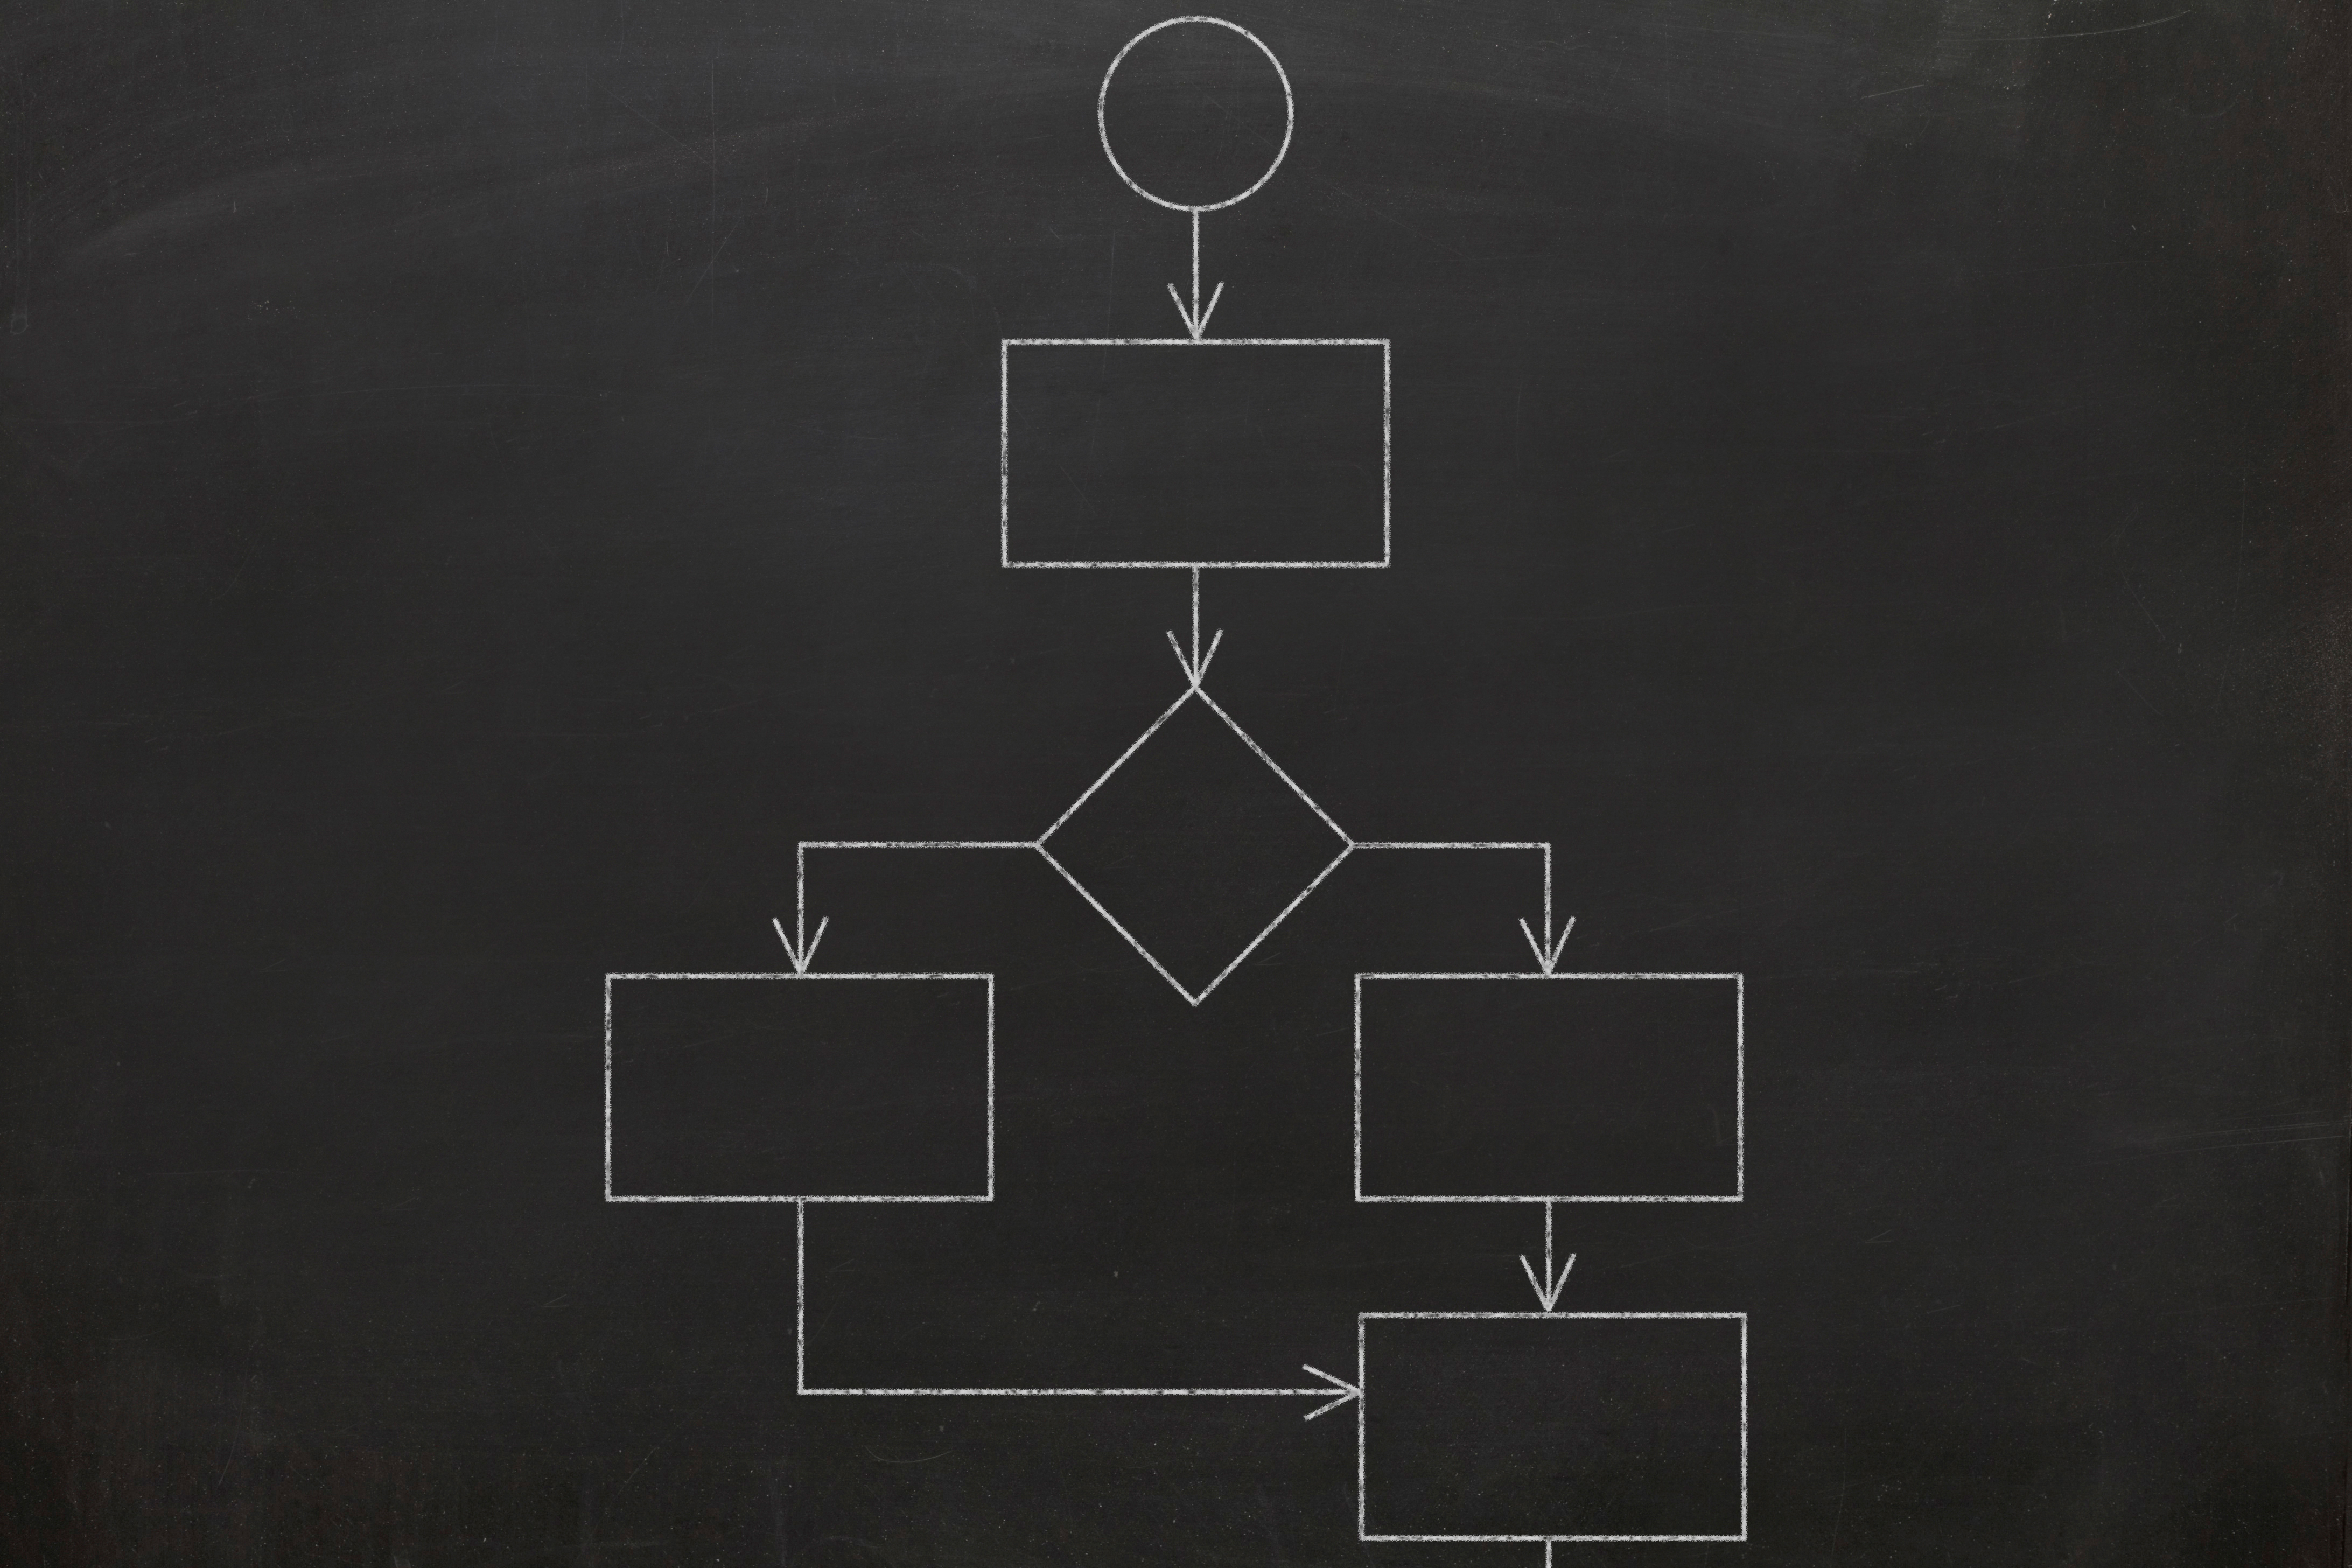 Image of flow chart on a blackboard.